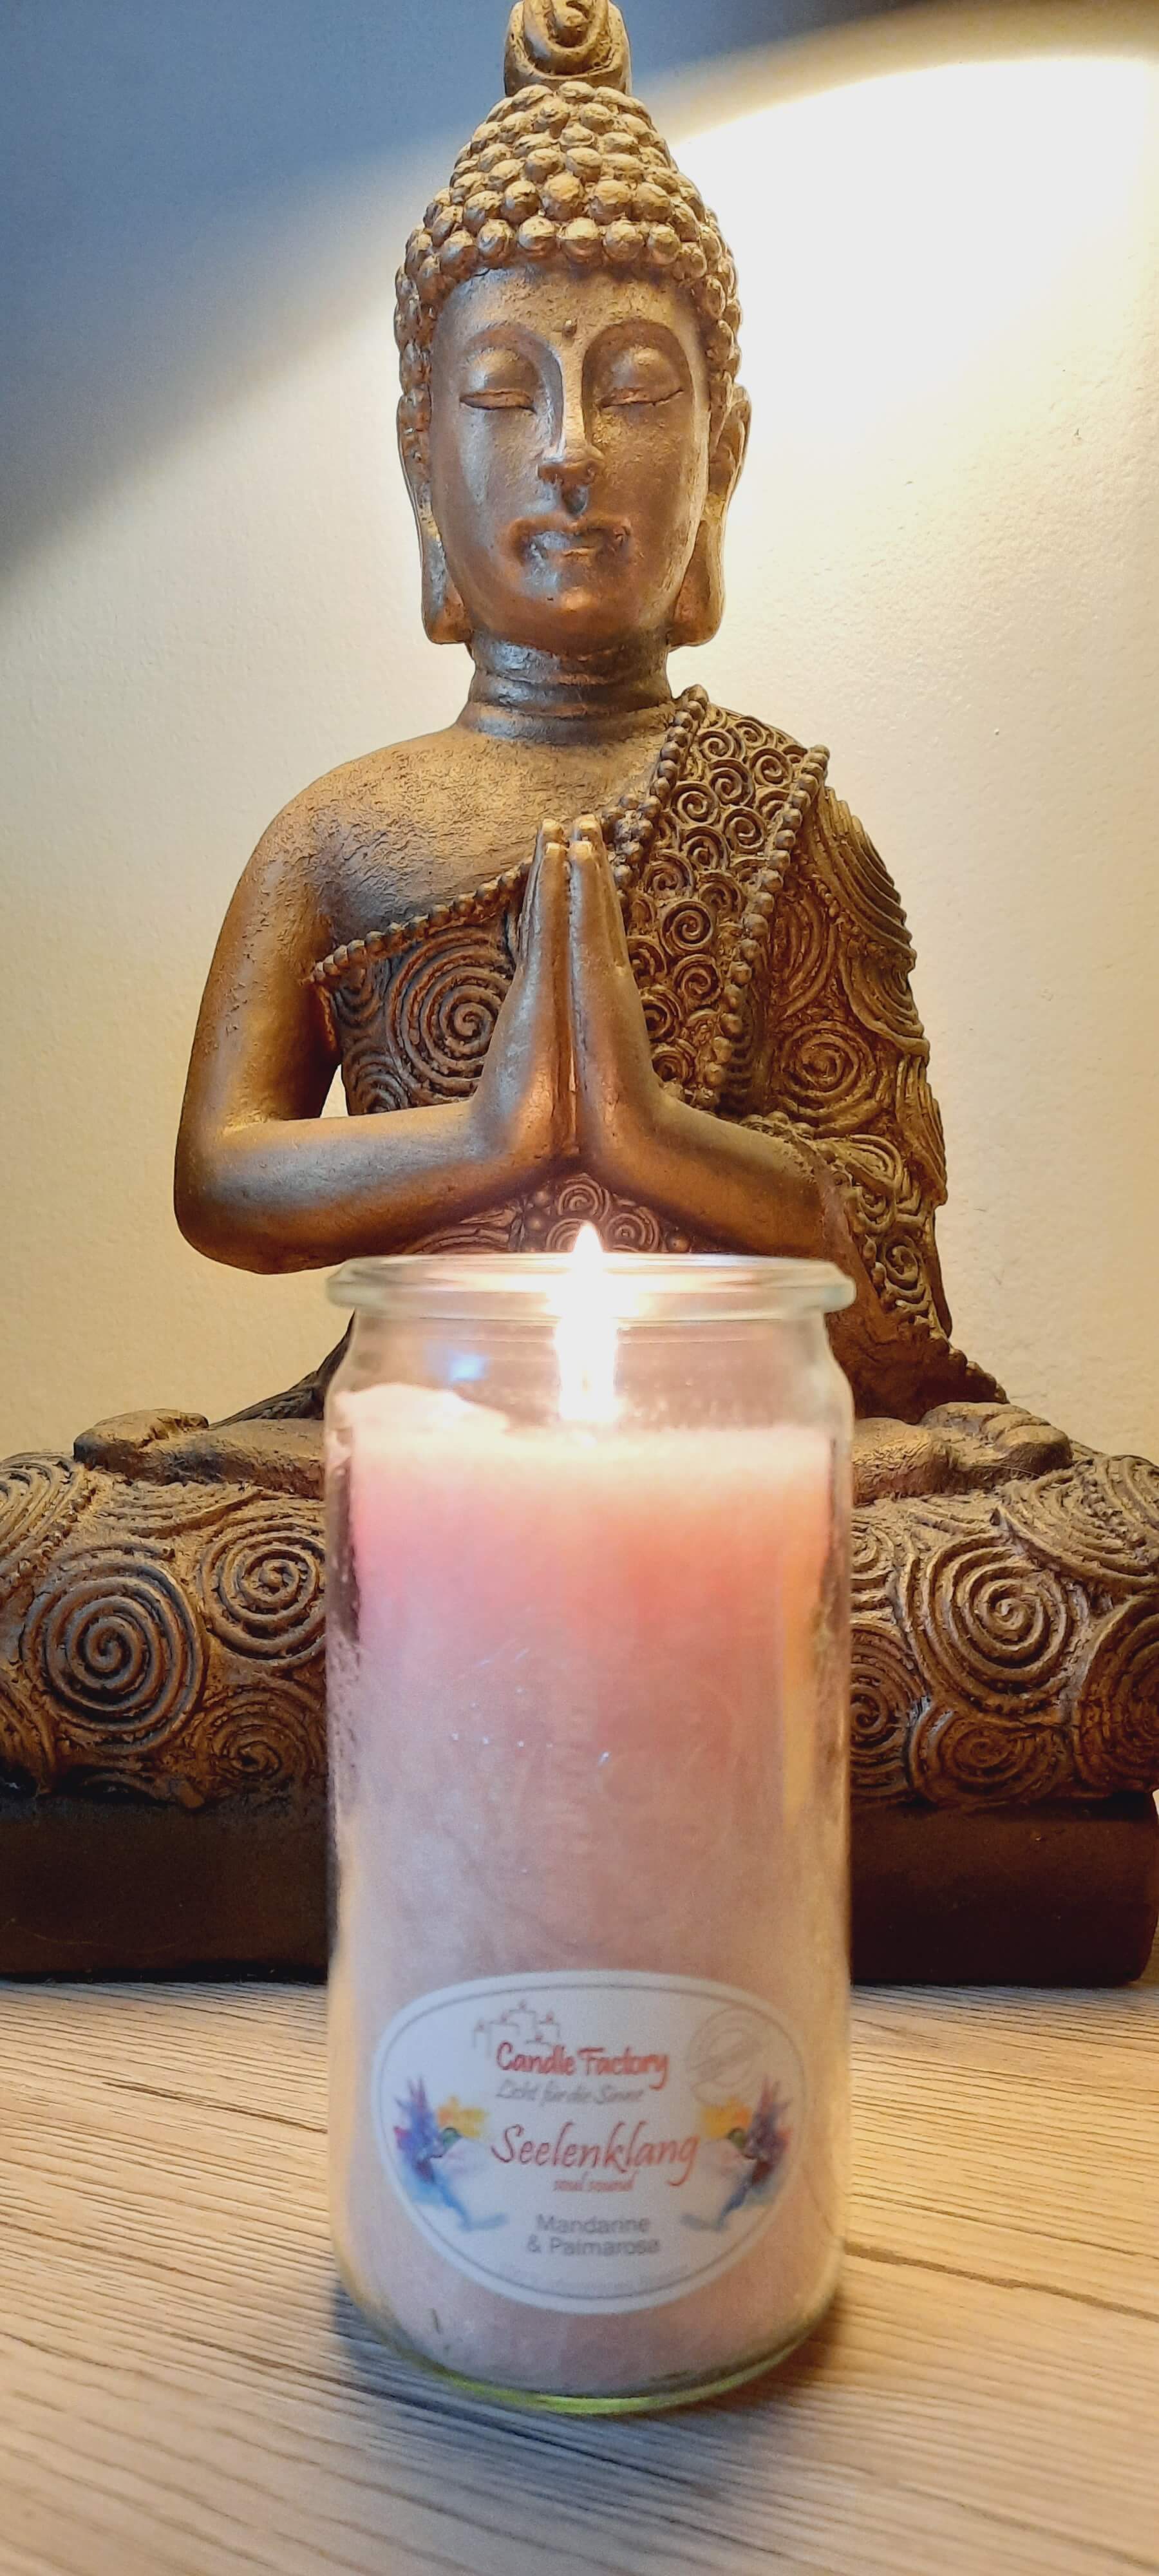 Brennende Kerze vor einer Buddha-Statue im Lotussitz